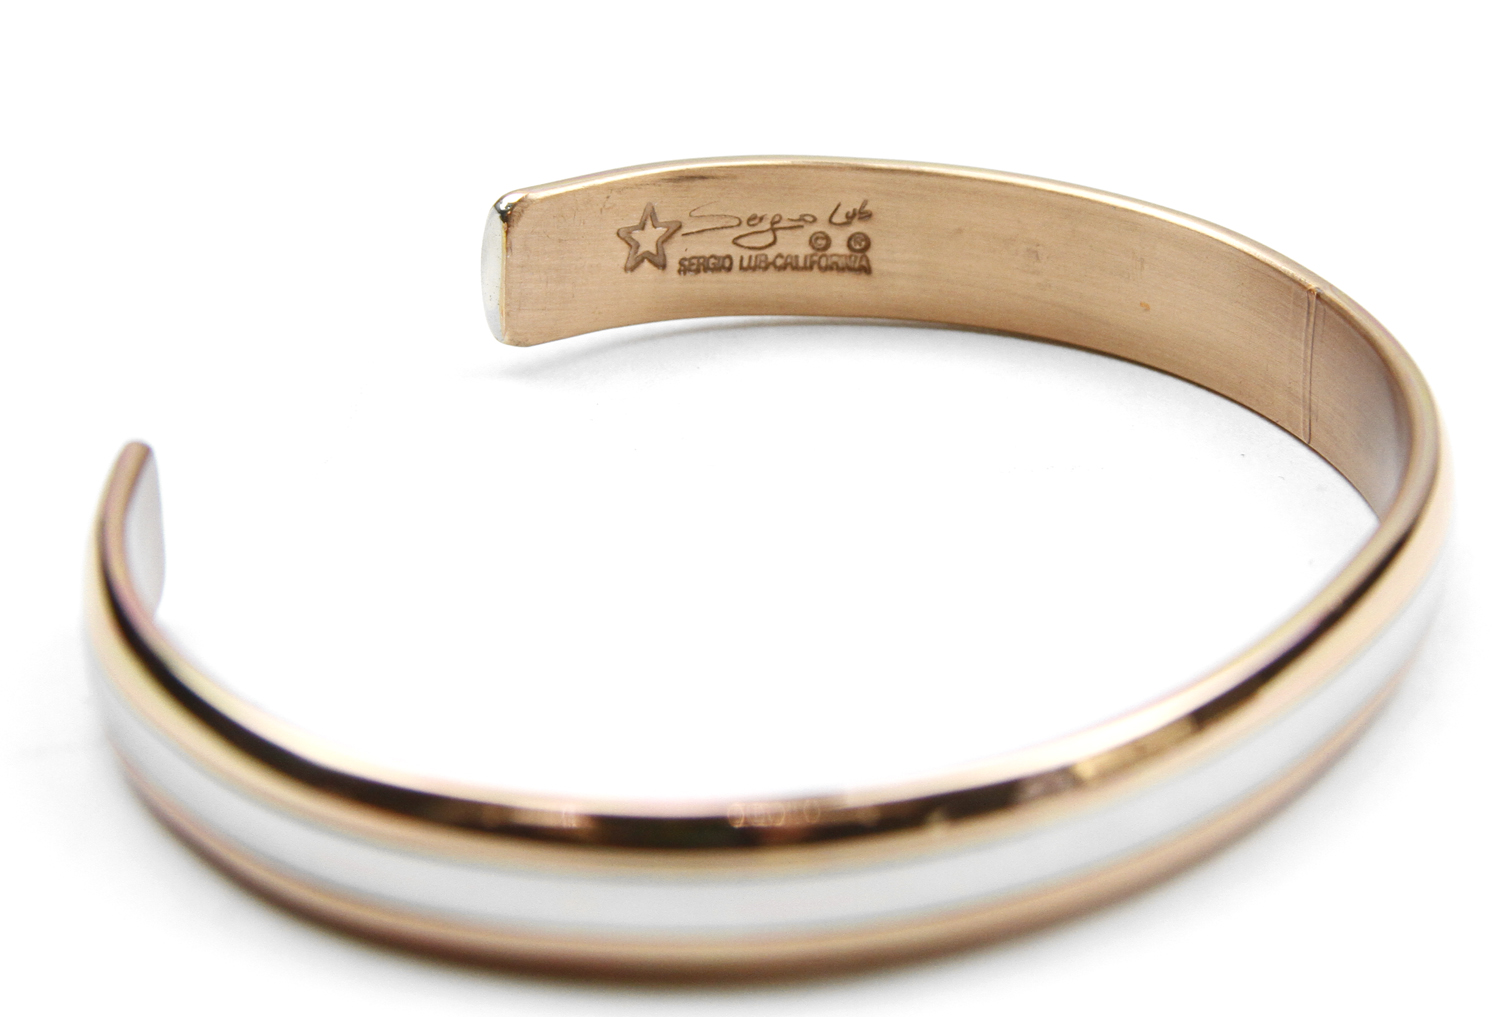 Sergio Lub California Copper Silver Cuff Bracelet | eBay